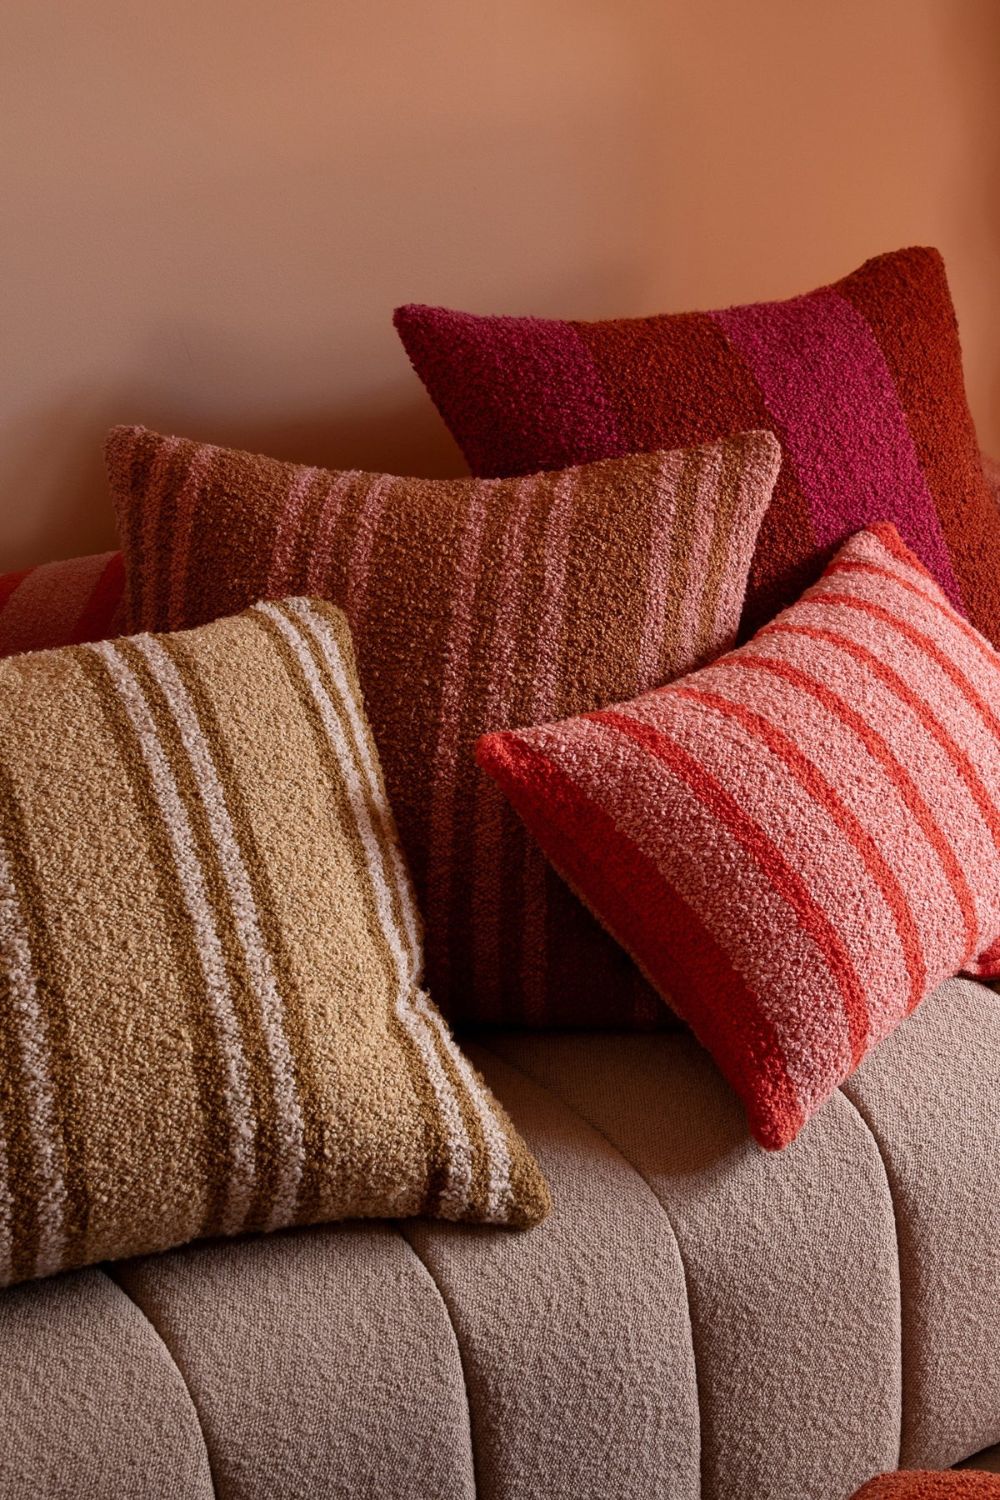 Boucle Thin Stripe Pink 60x40cm Cushion